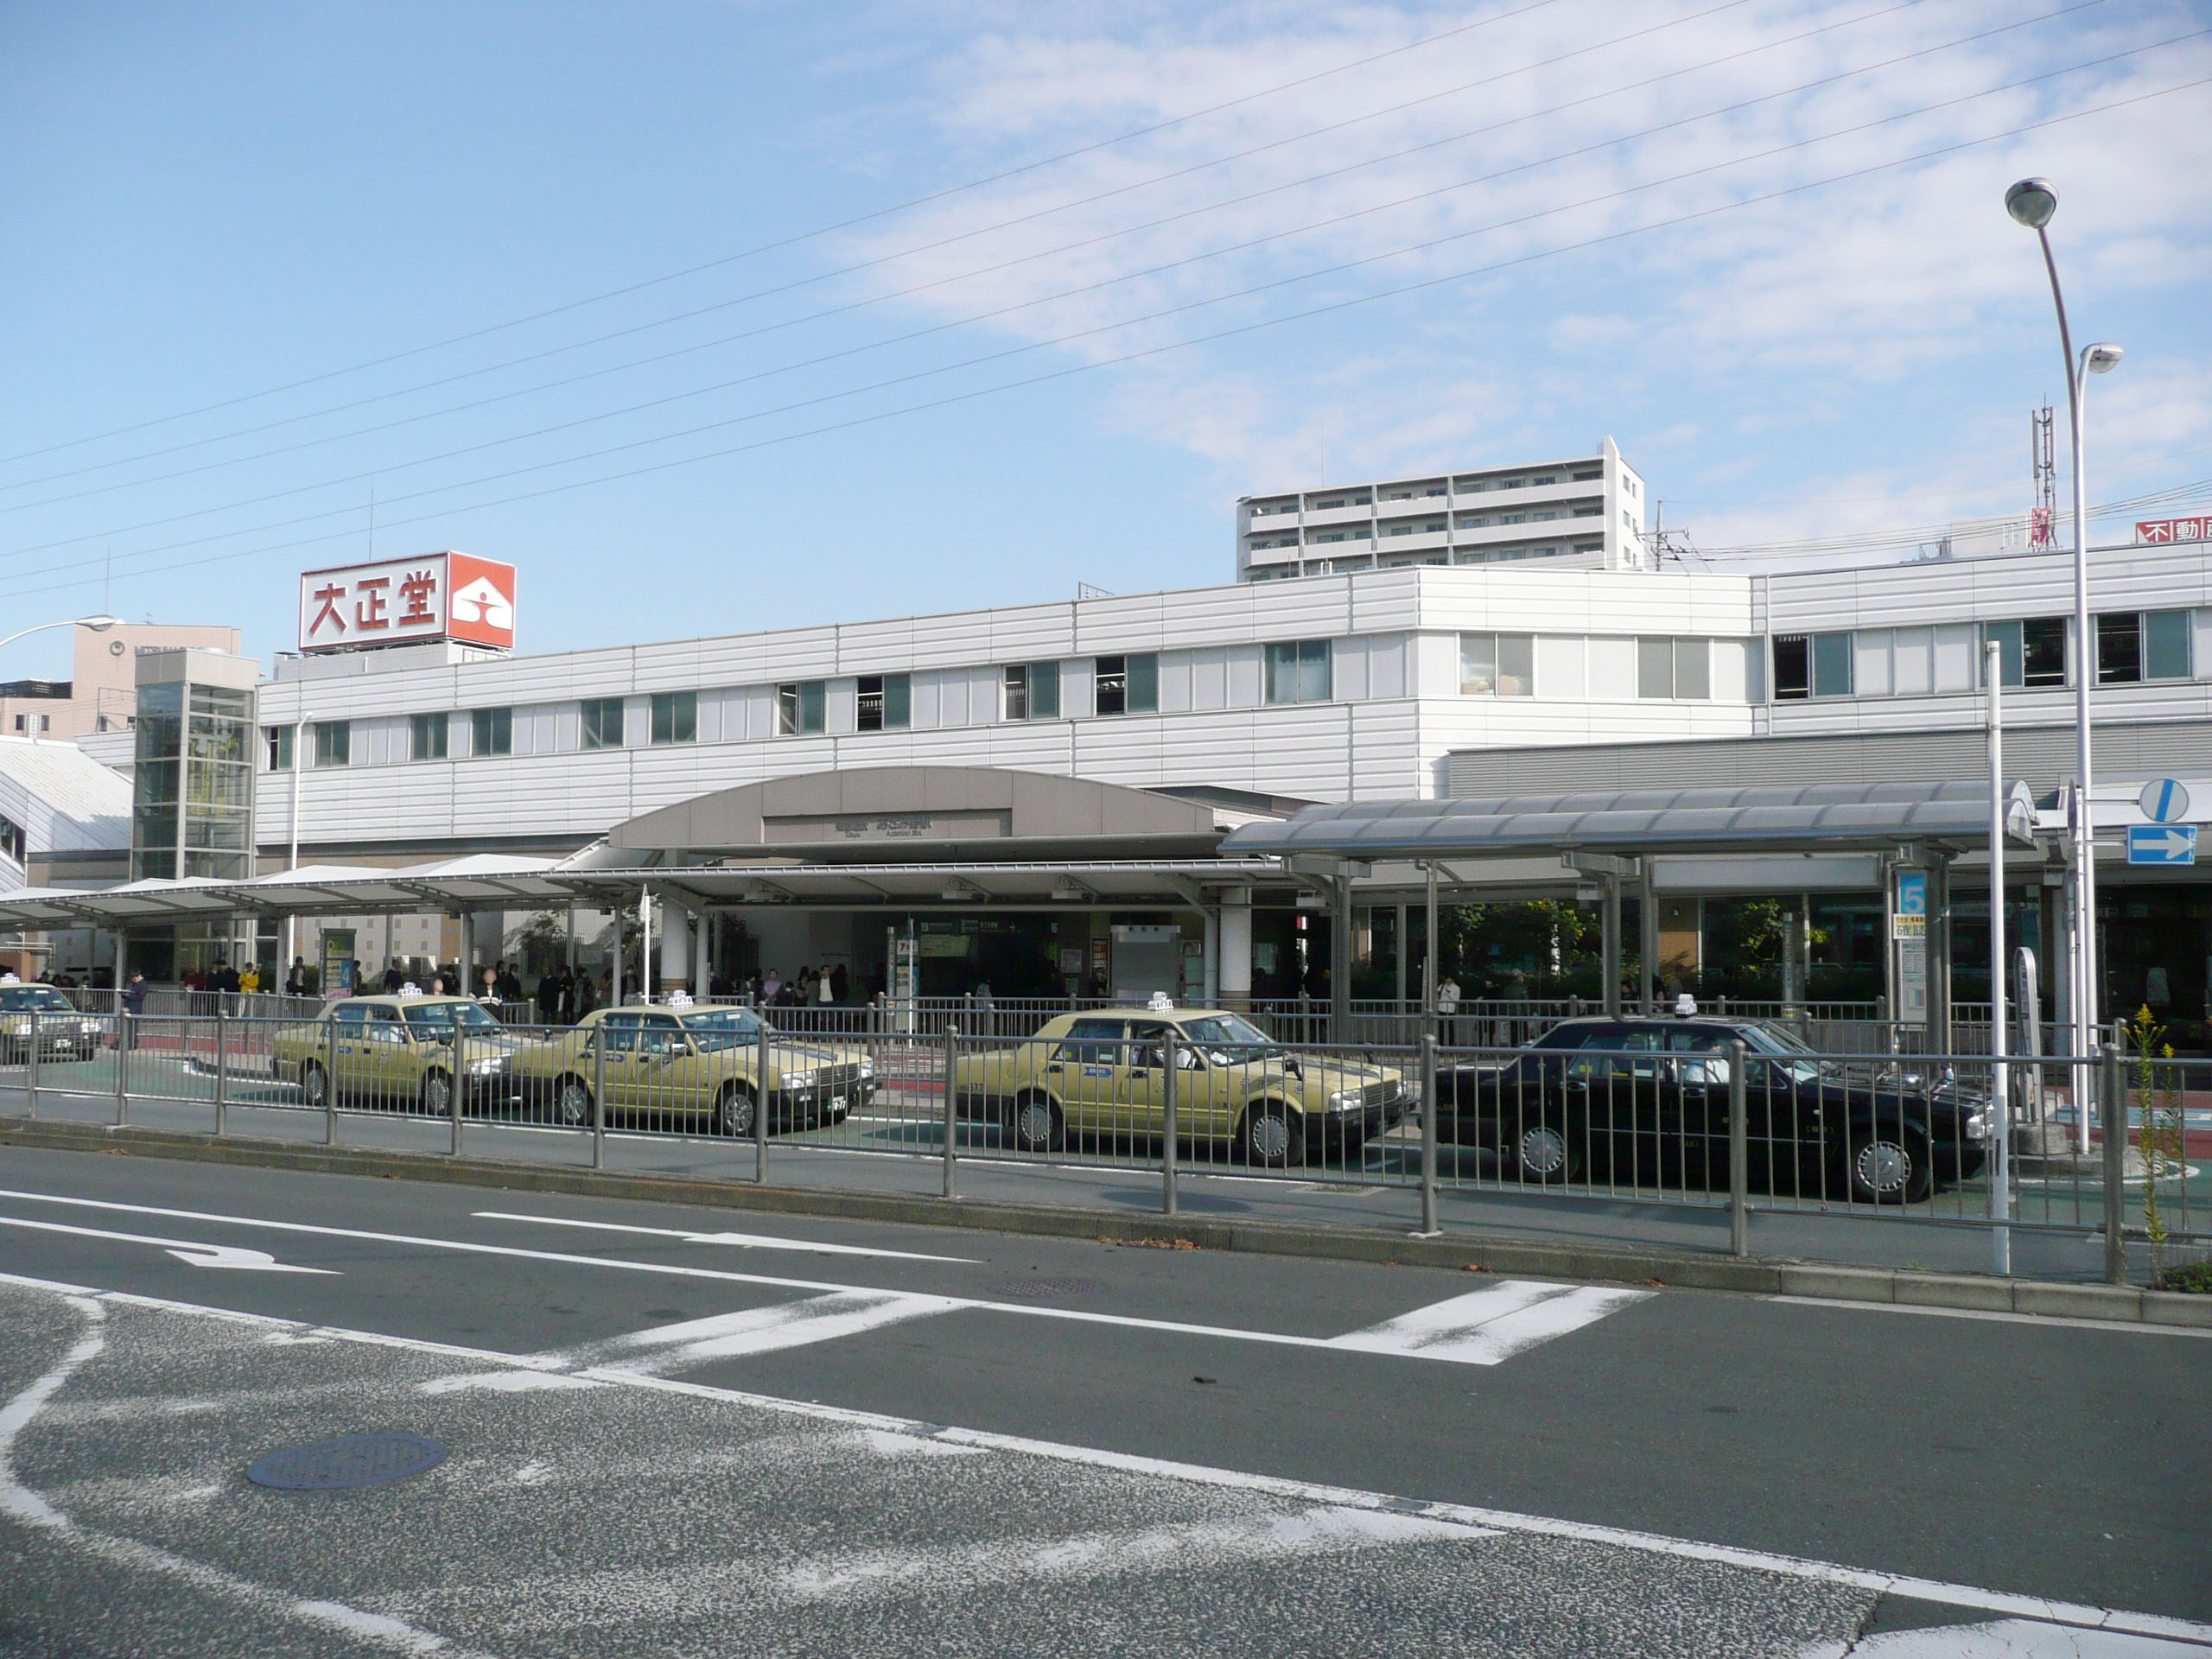 あざみ野駅 - Wikipedia